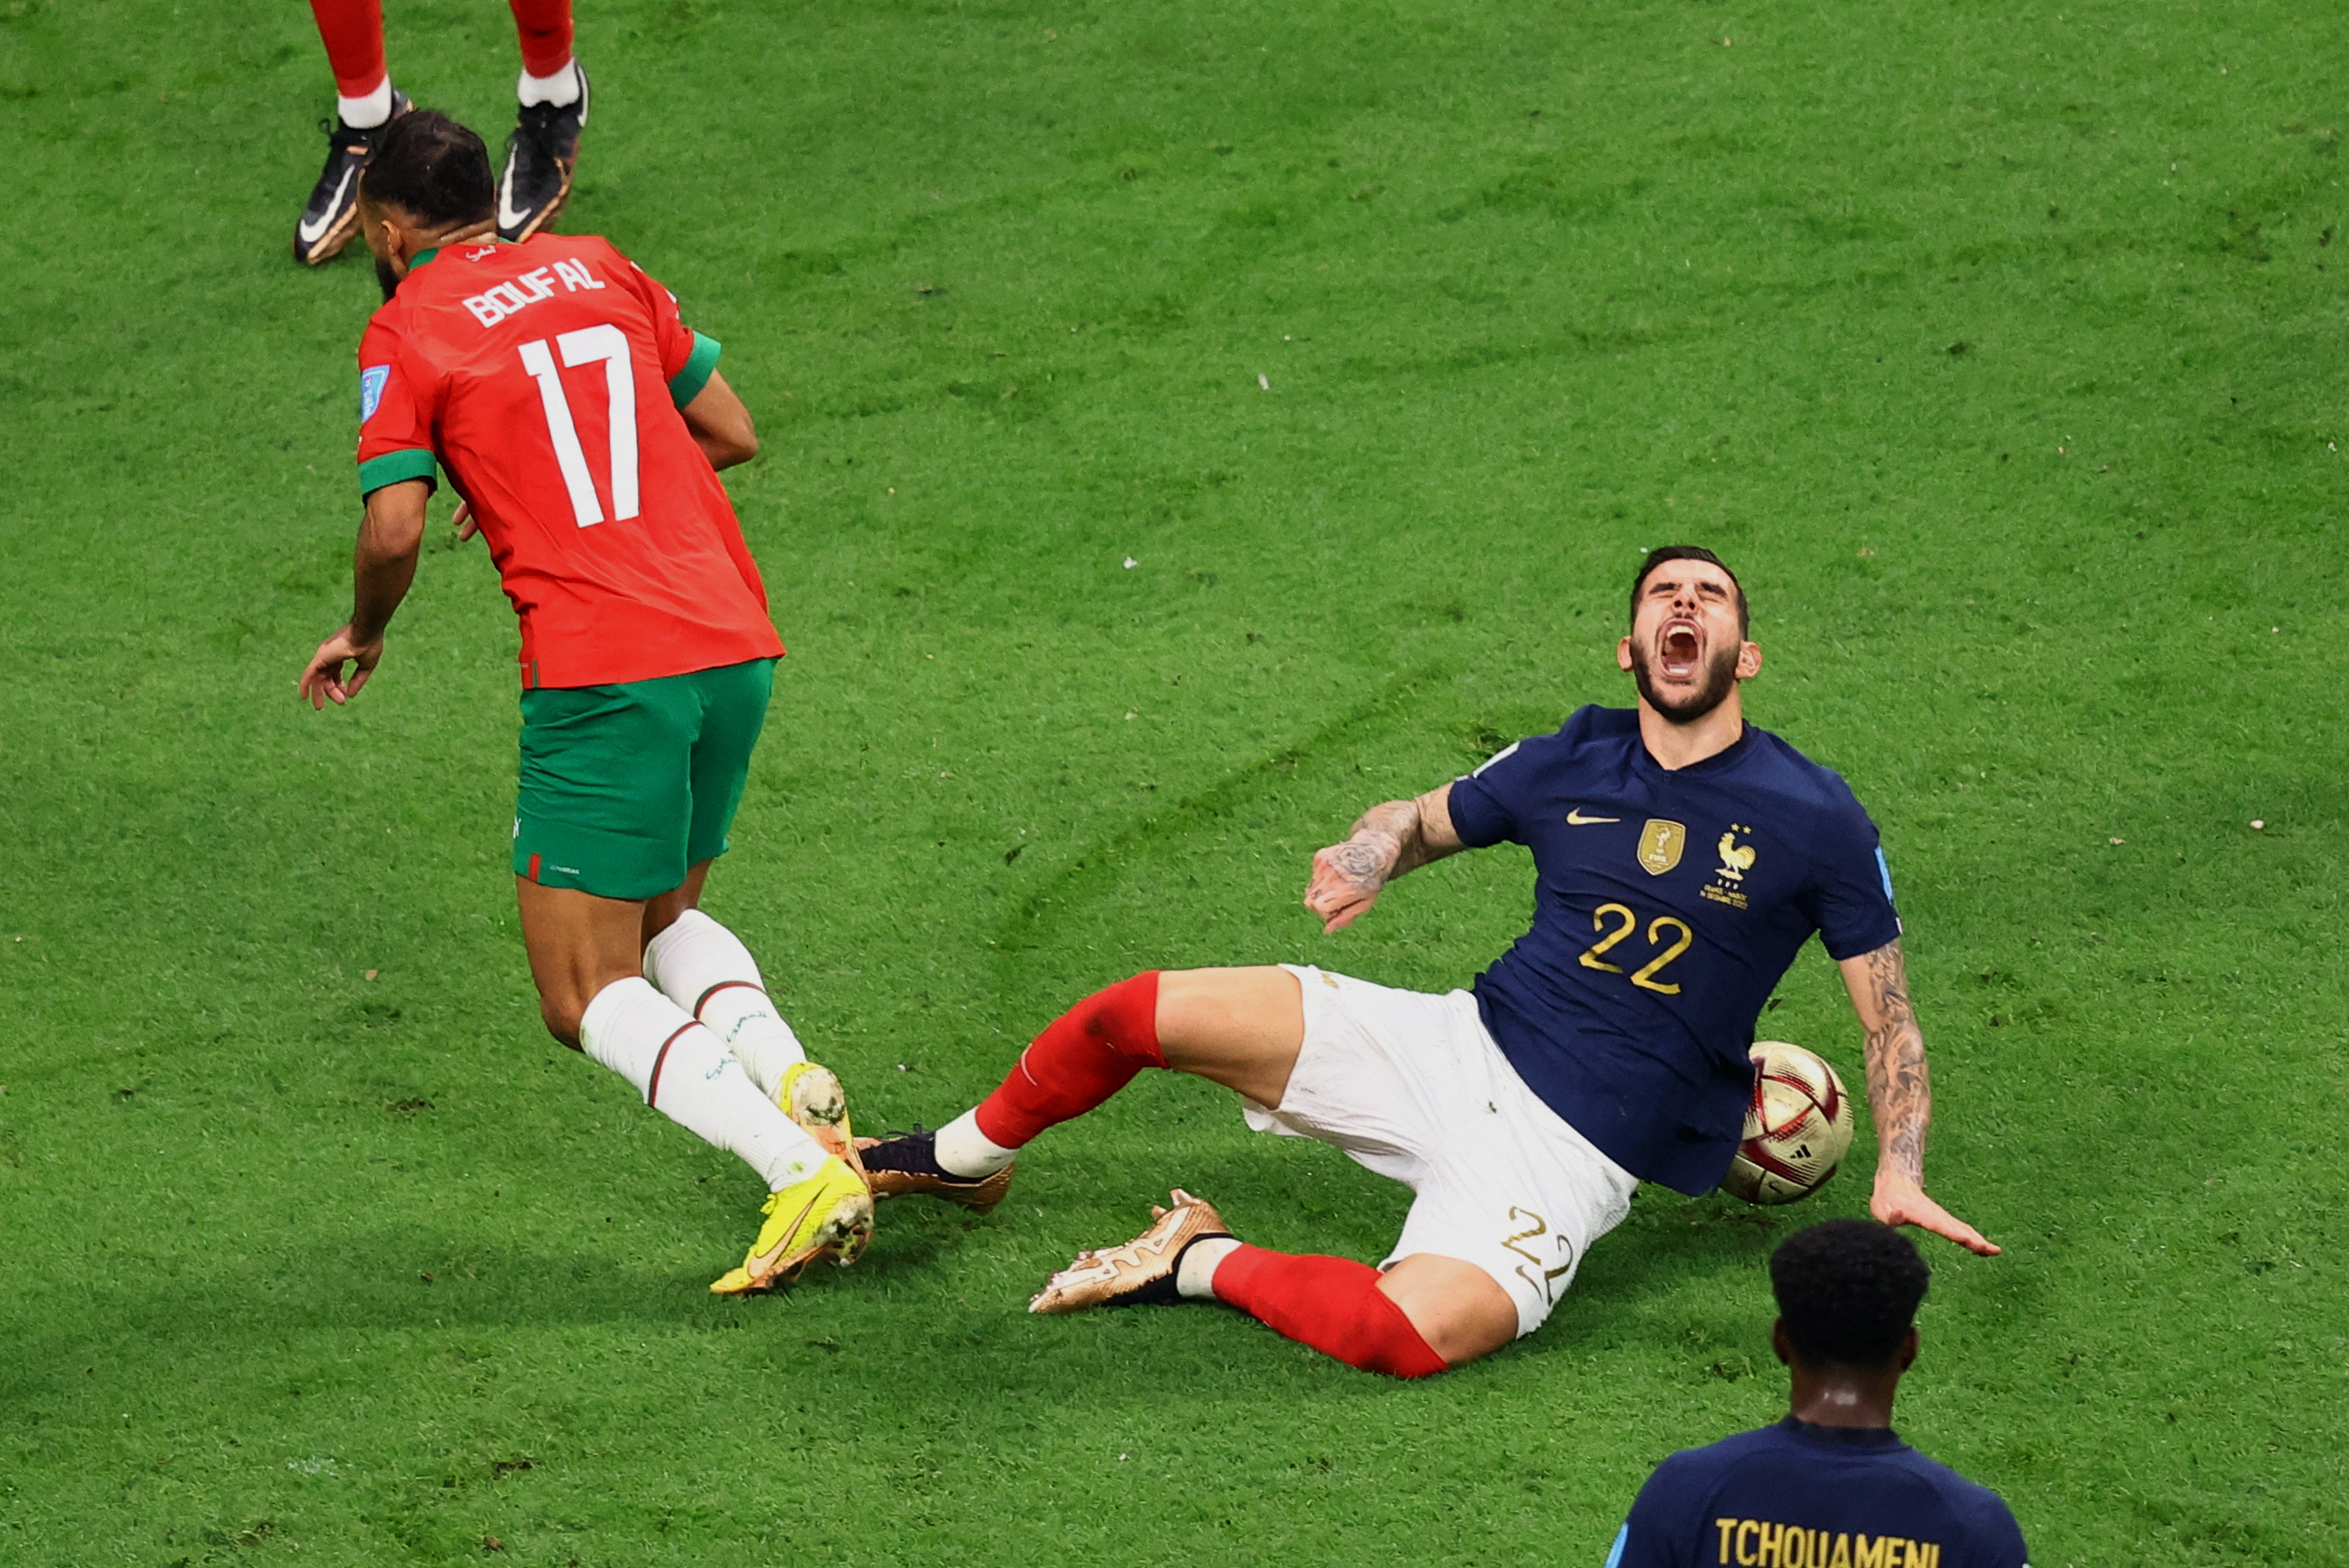 Sofiane Boufal le cometió infracción a Theo Hernandez, quien quedó dolorido. El jugador de Marruecos fue amonestado (REUTERS/Hannah Mckay)